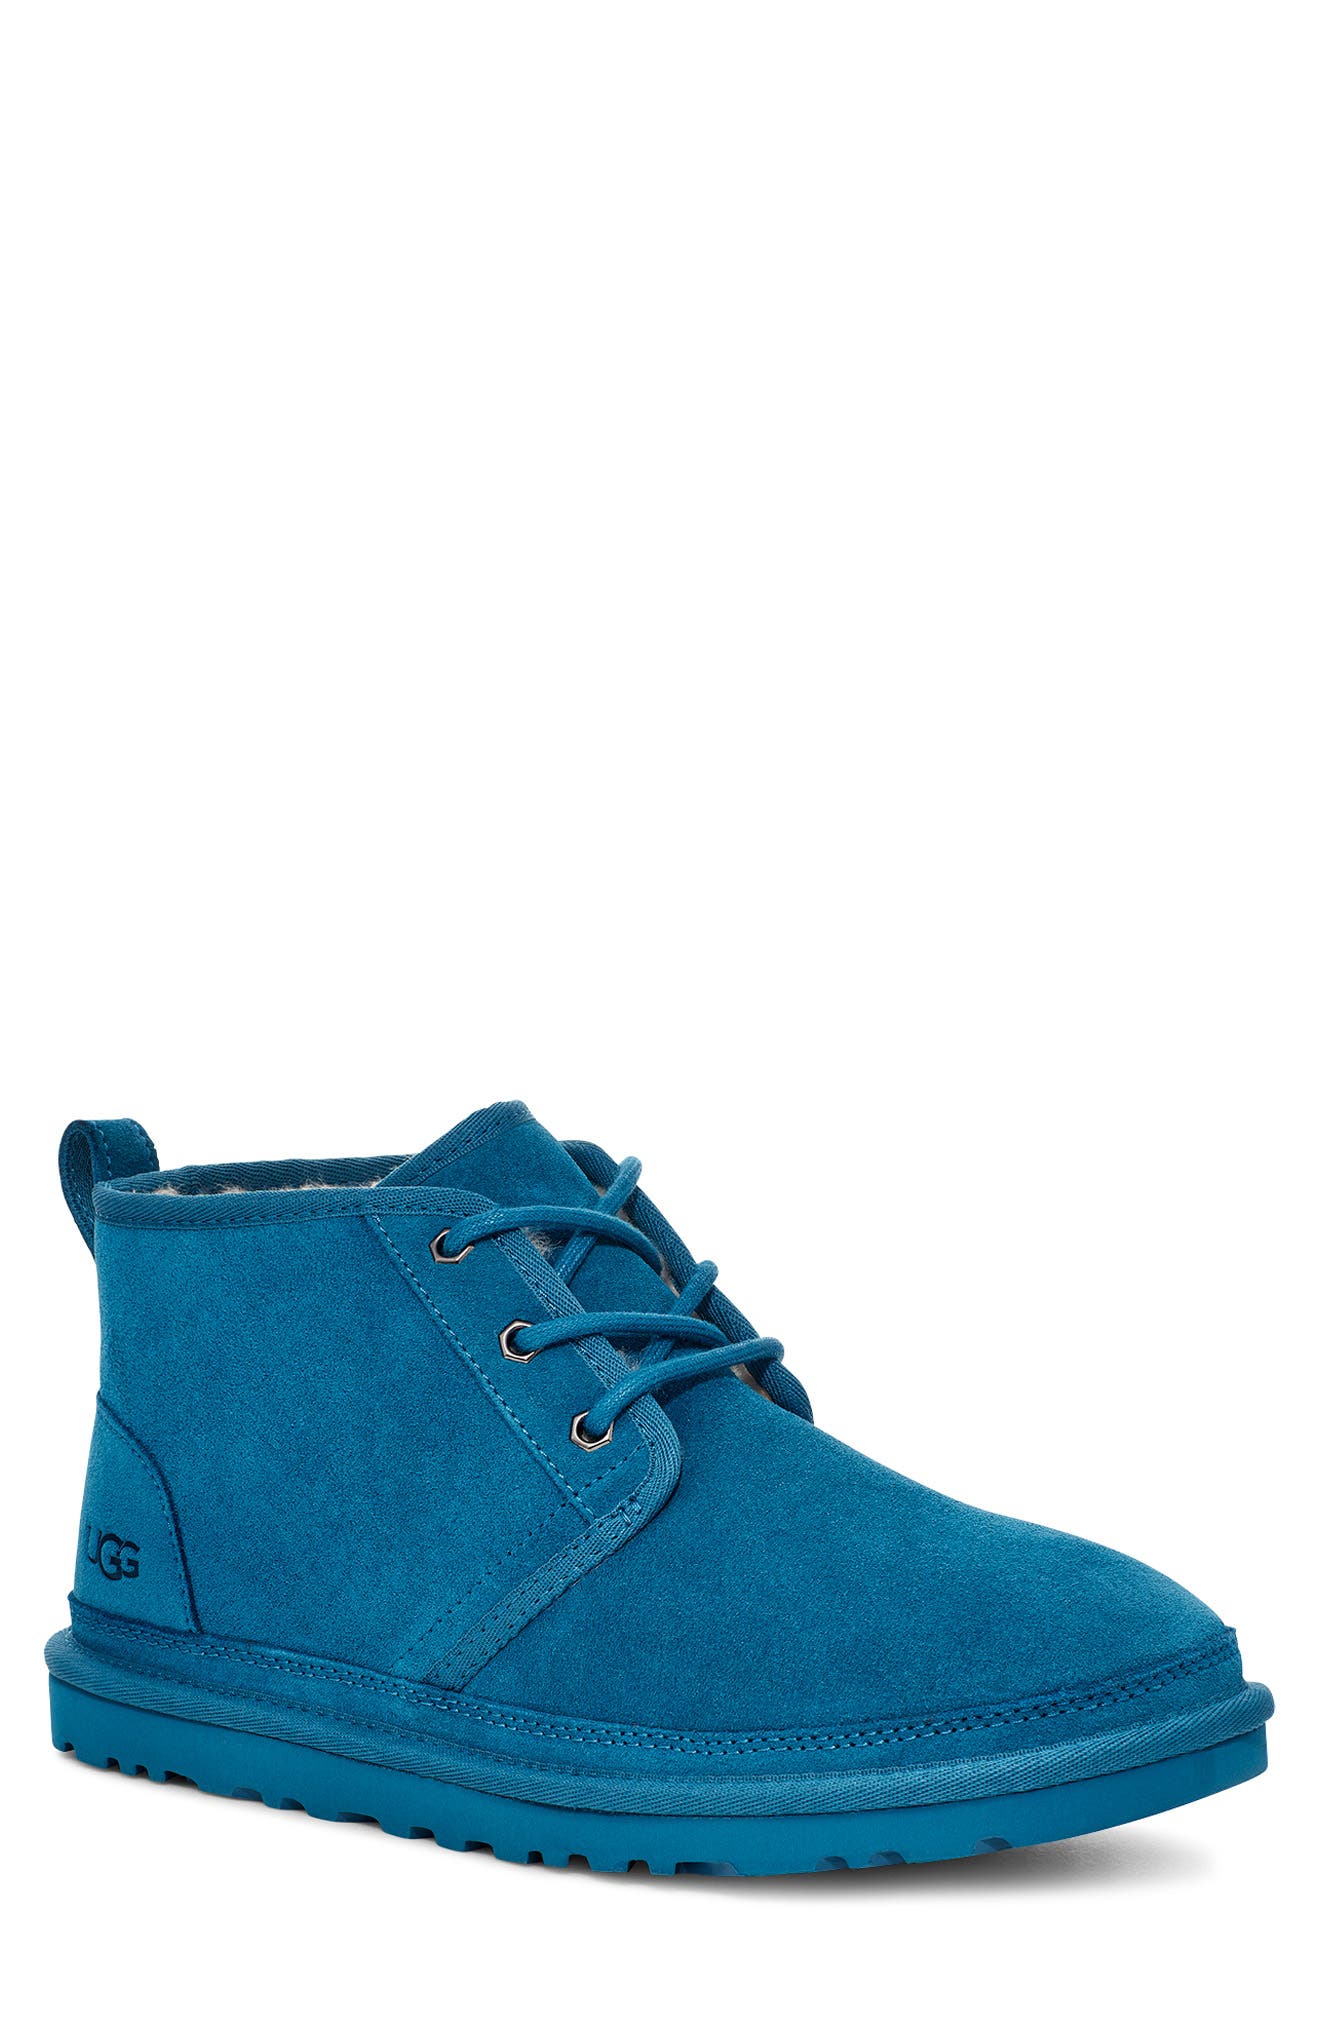 blue ugg shoes